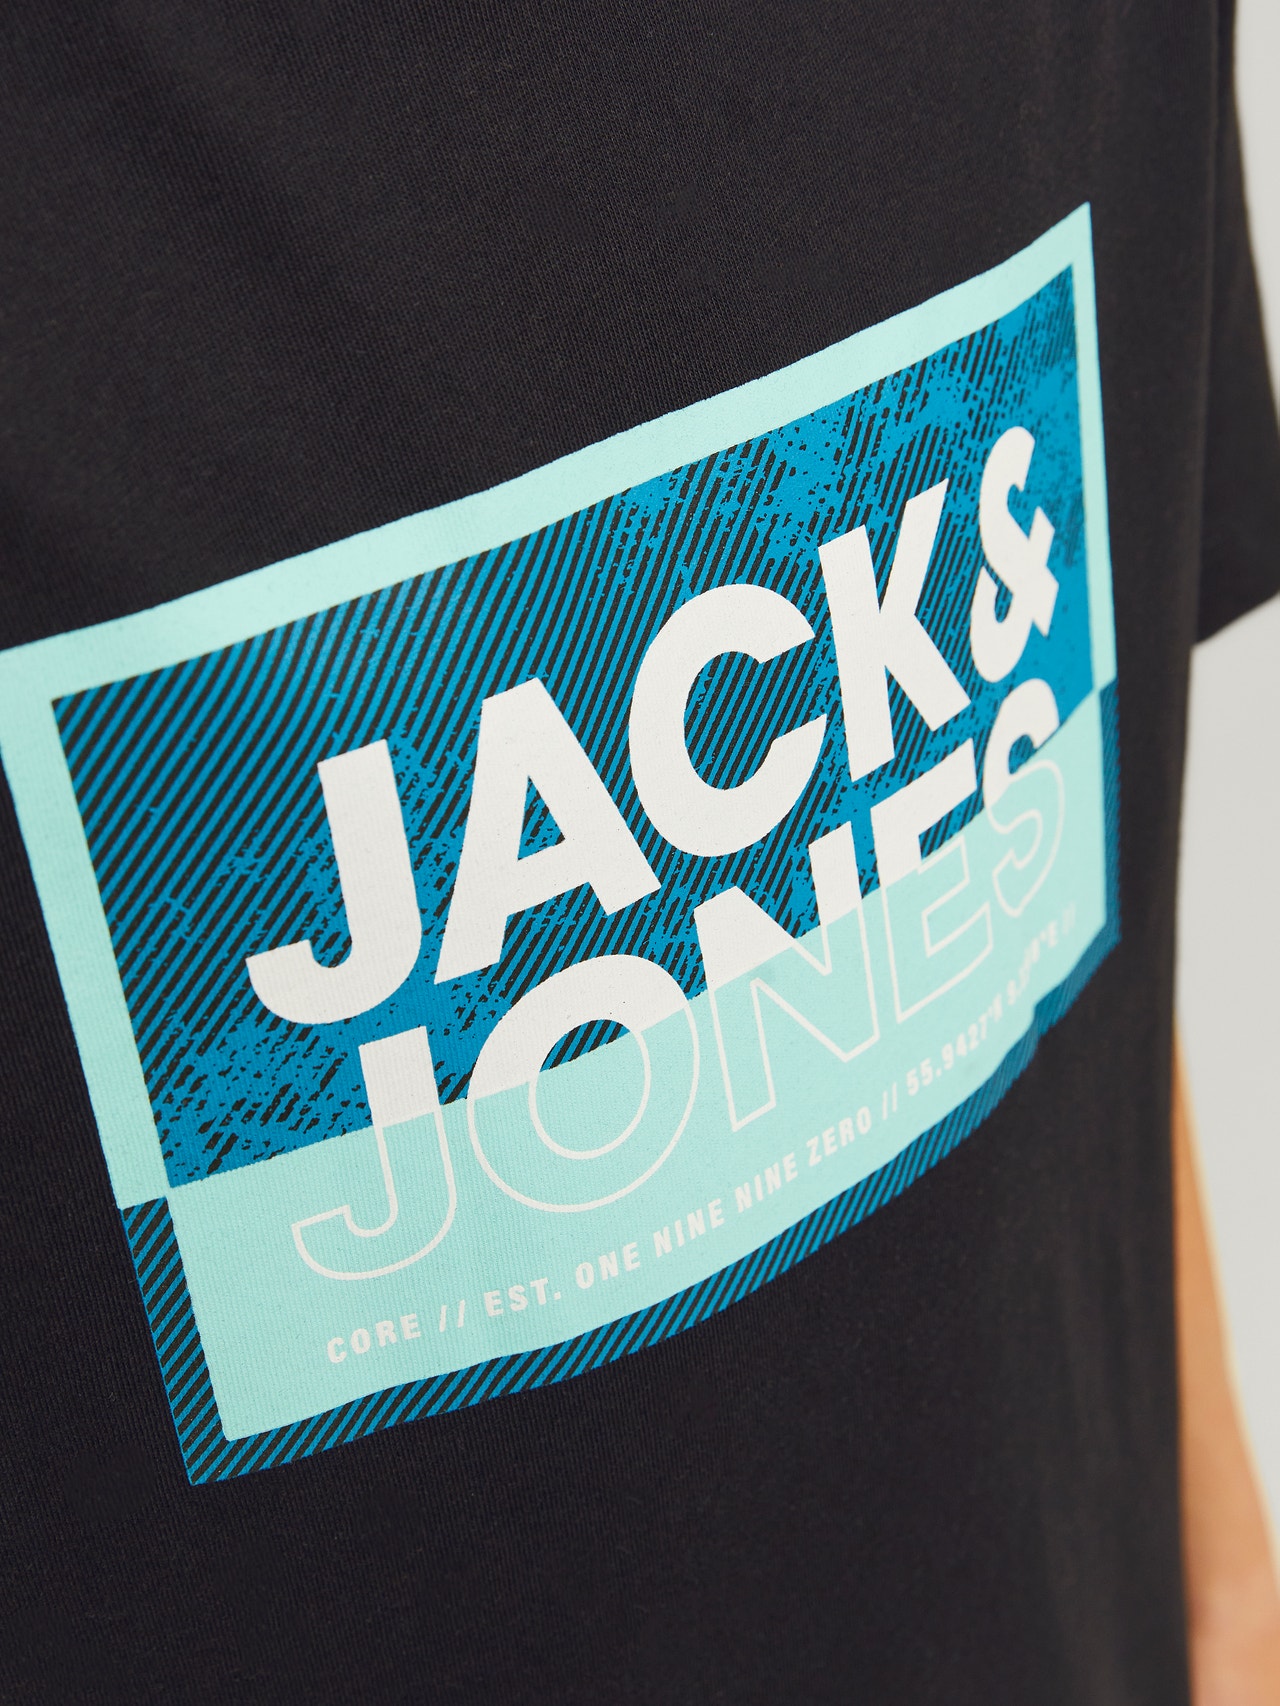 Jack & Jones 2-pack Logo T-shirt For boys -Black - 12264266